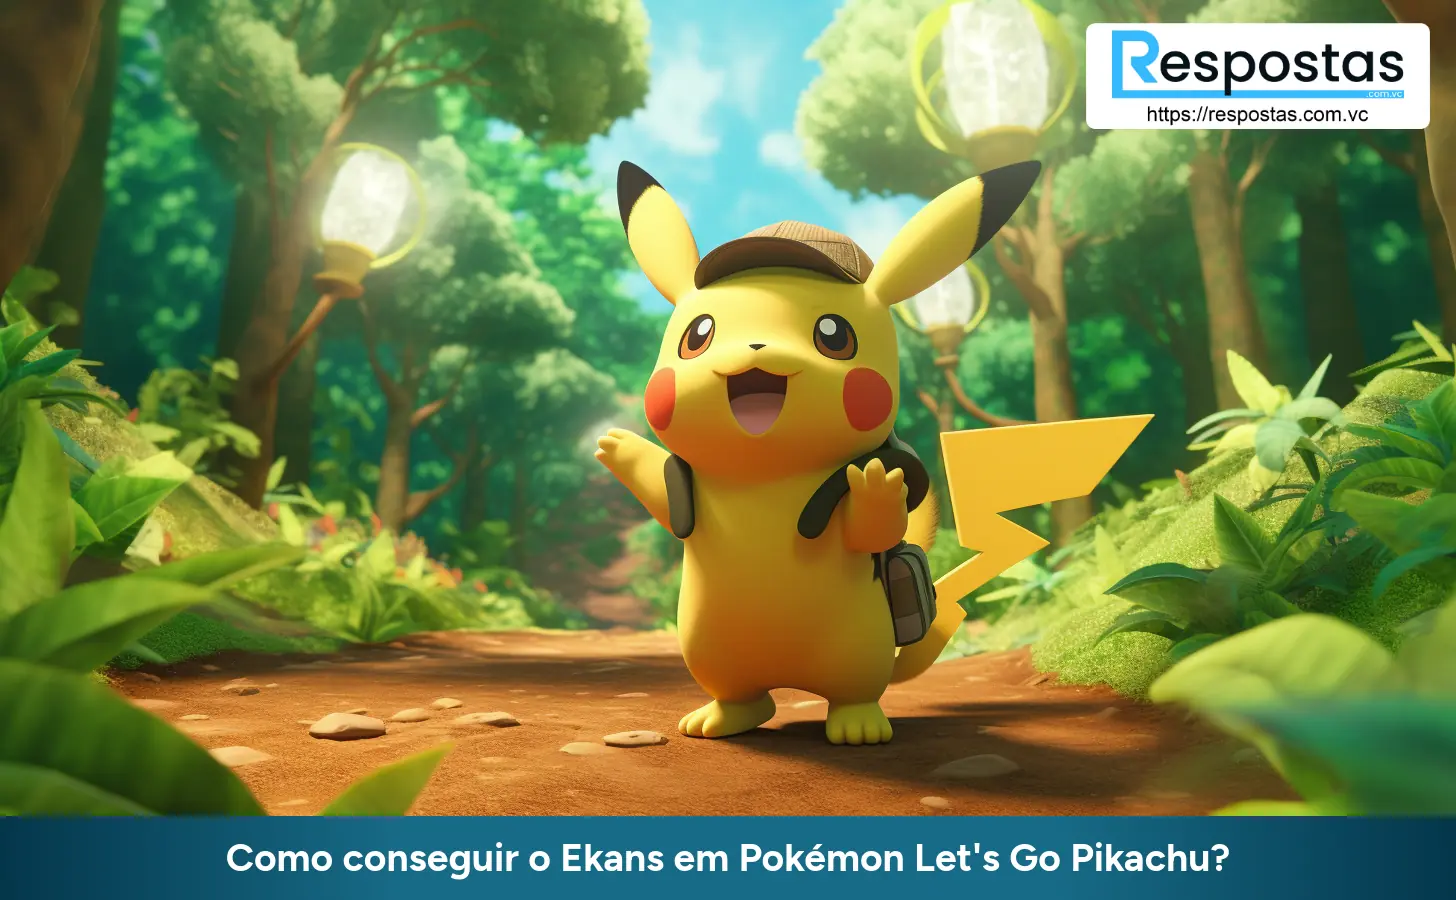 Como conseguir o Ekans em Pokémon Let's Go Pikachu?